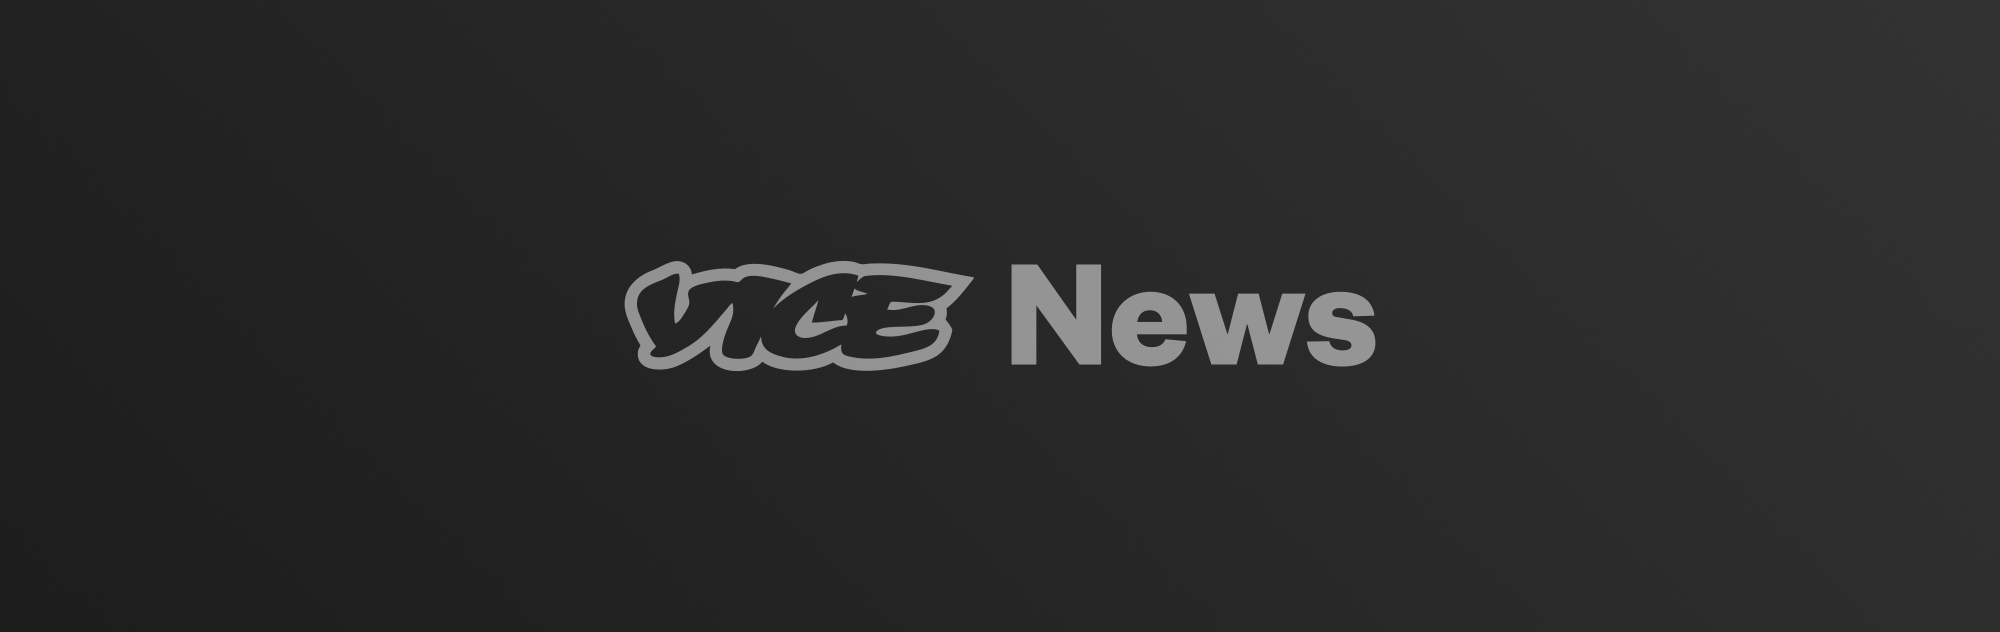 Vice News logo on dark gradient background